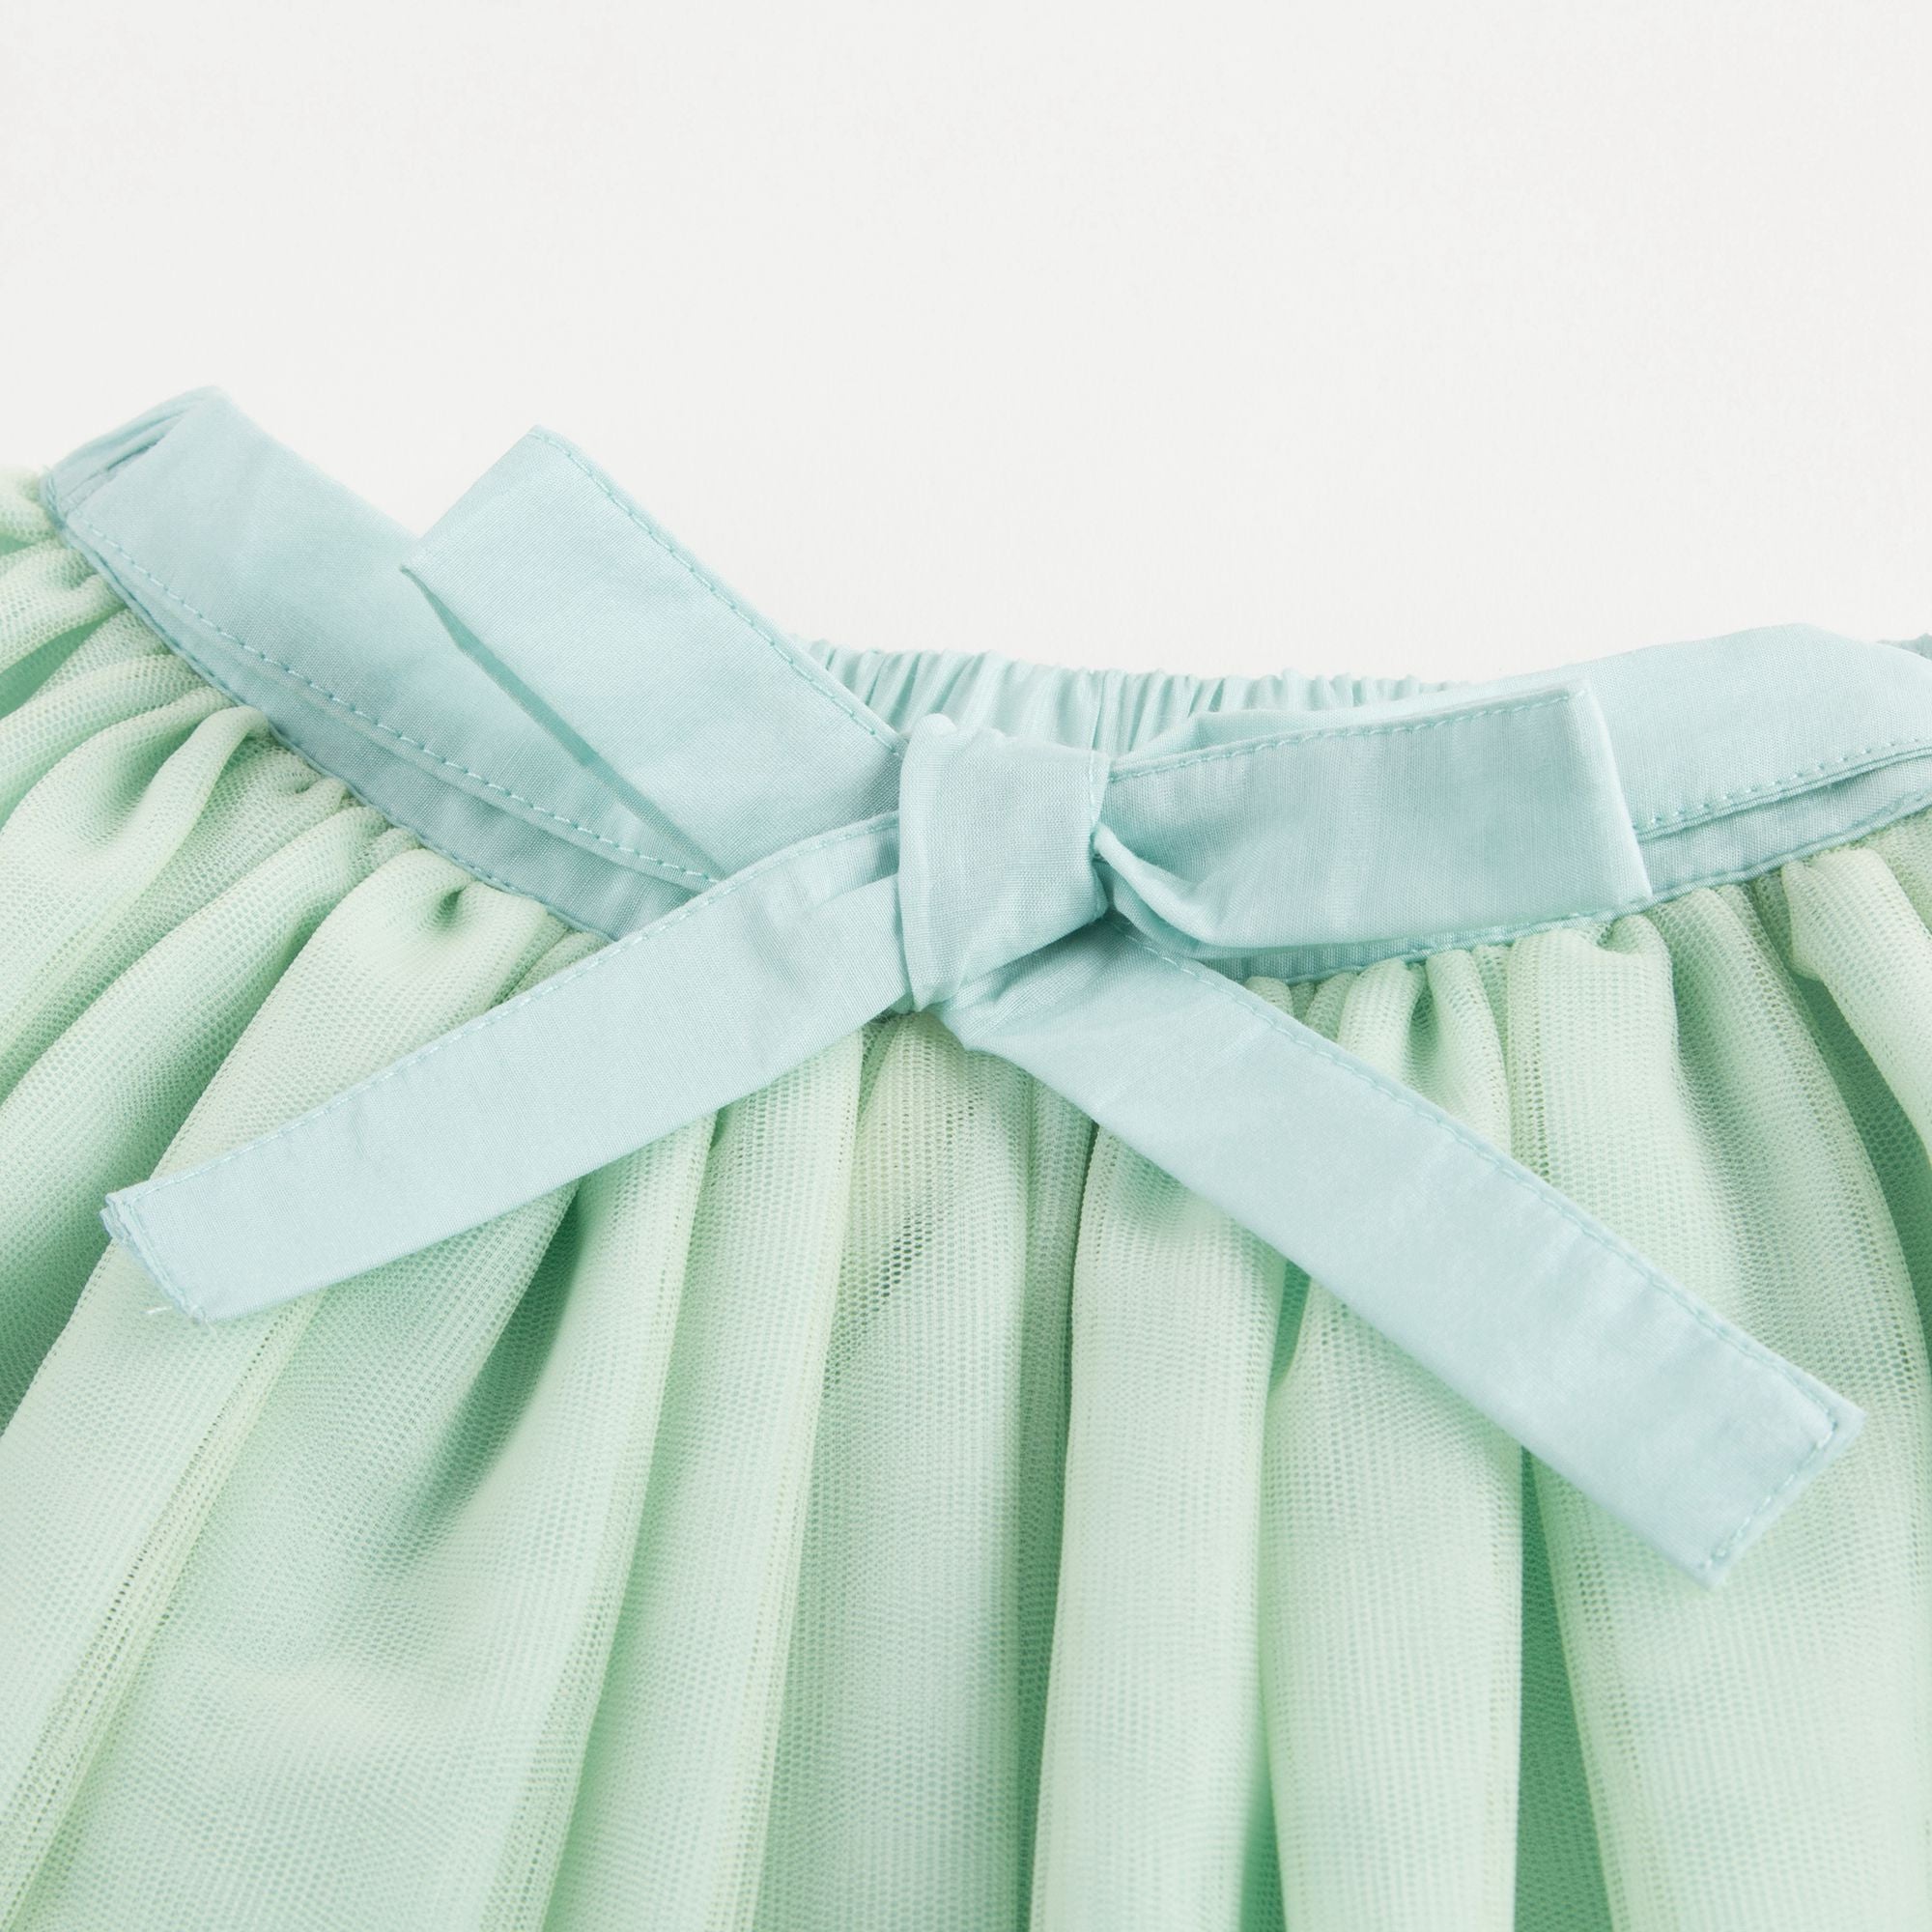 Yam Green Skirt